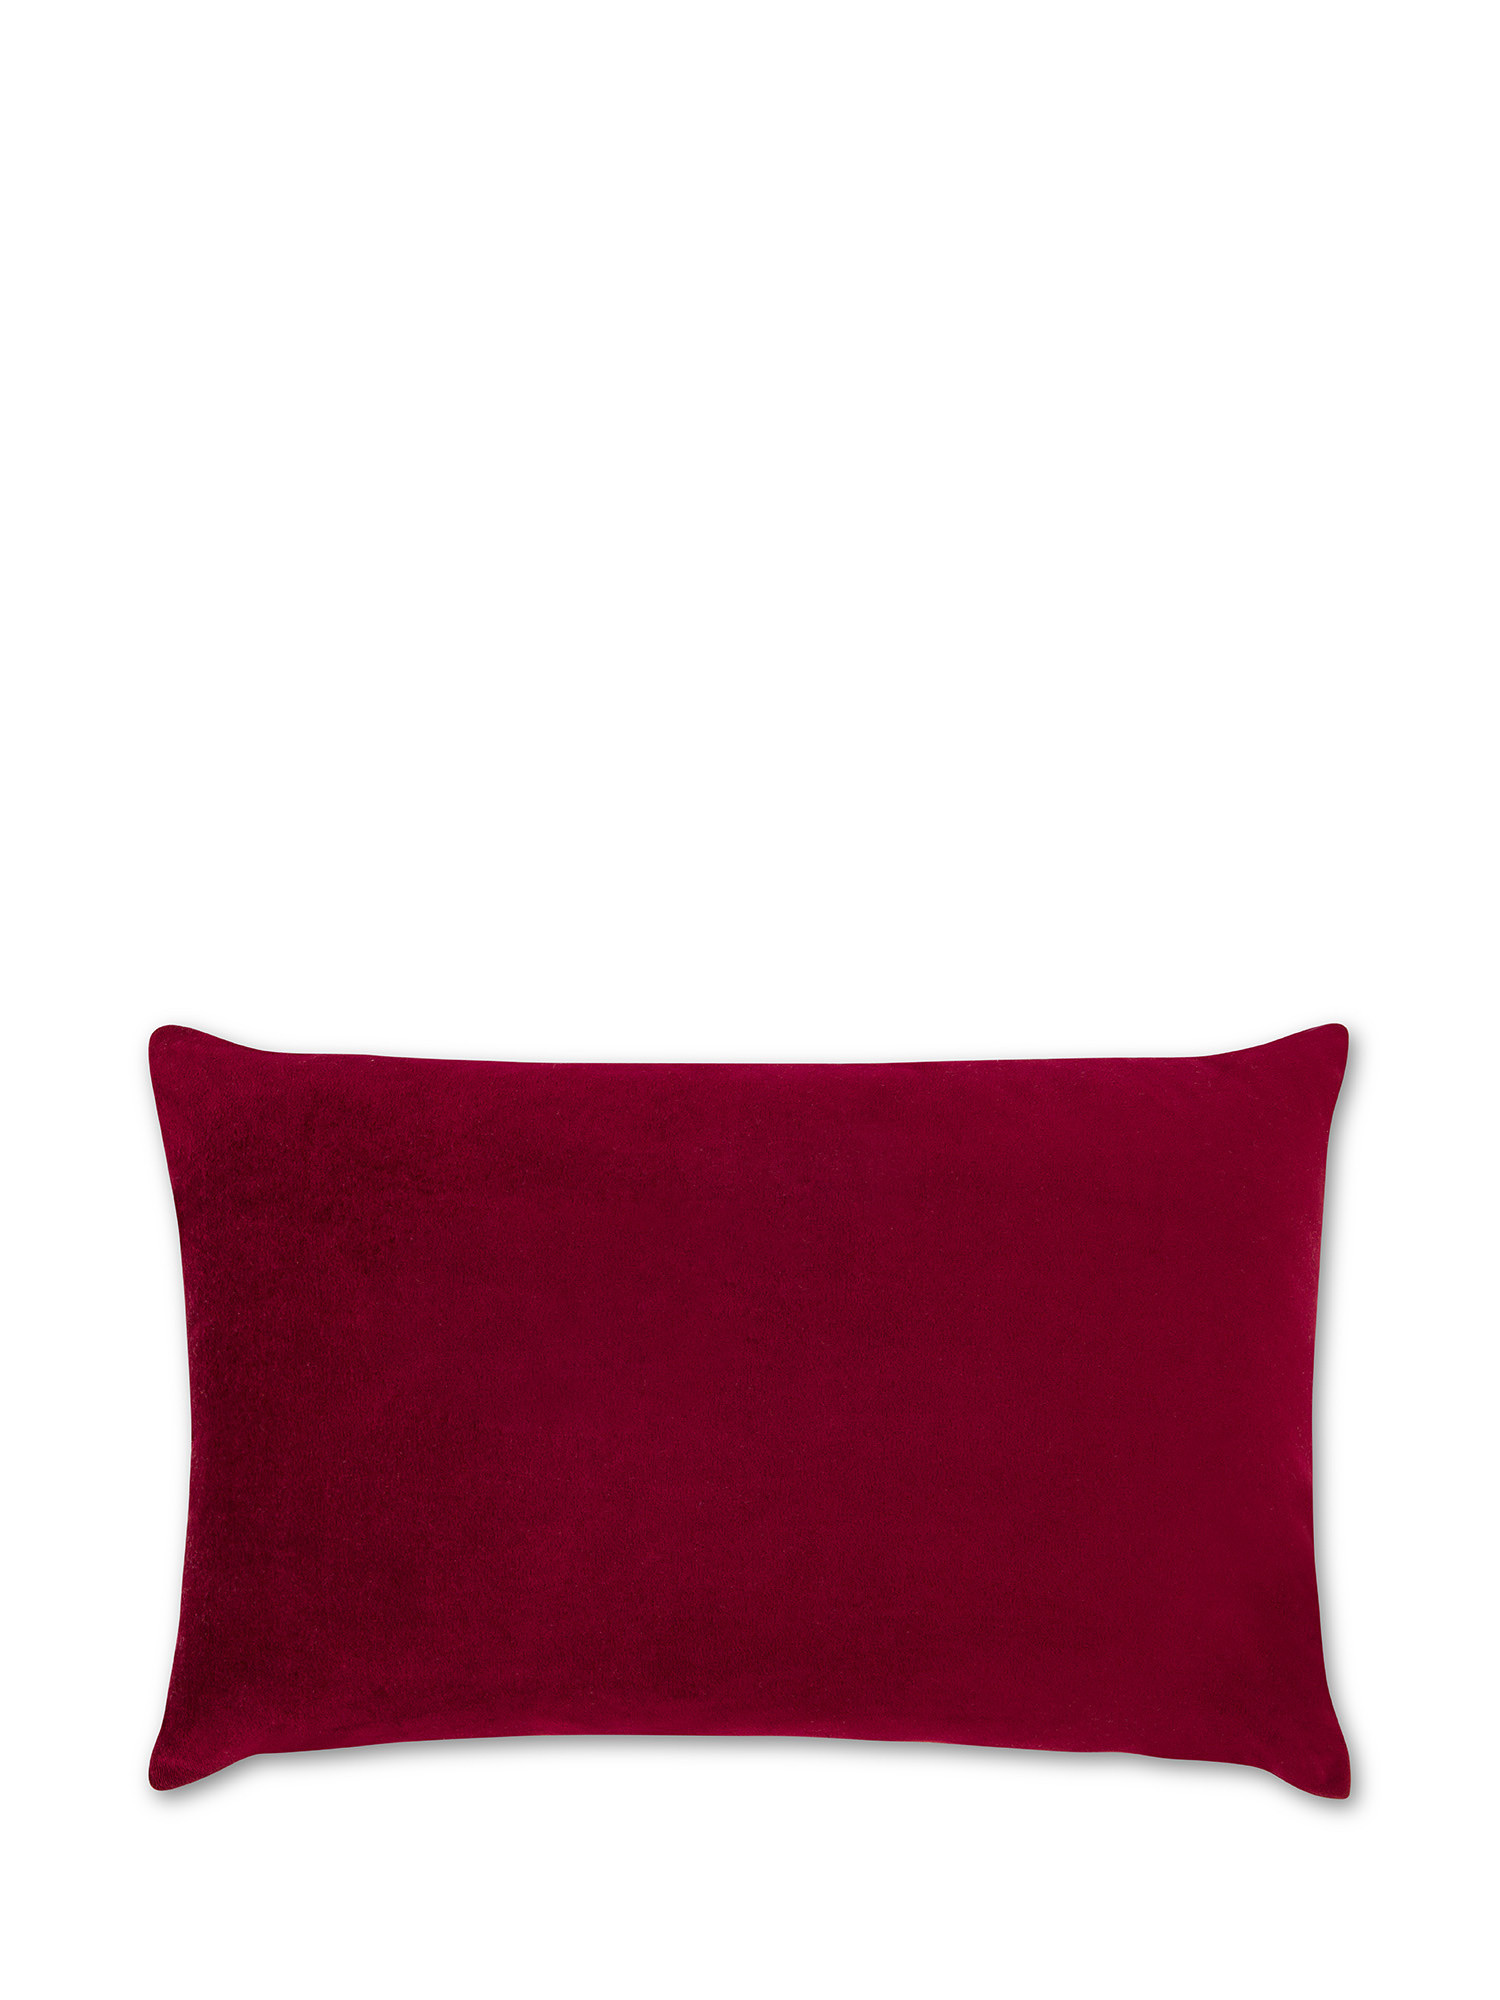 Star print velvet cushion 35x55cm, Dark Red, large image number 1